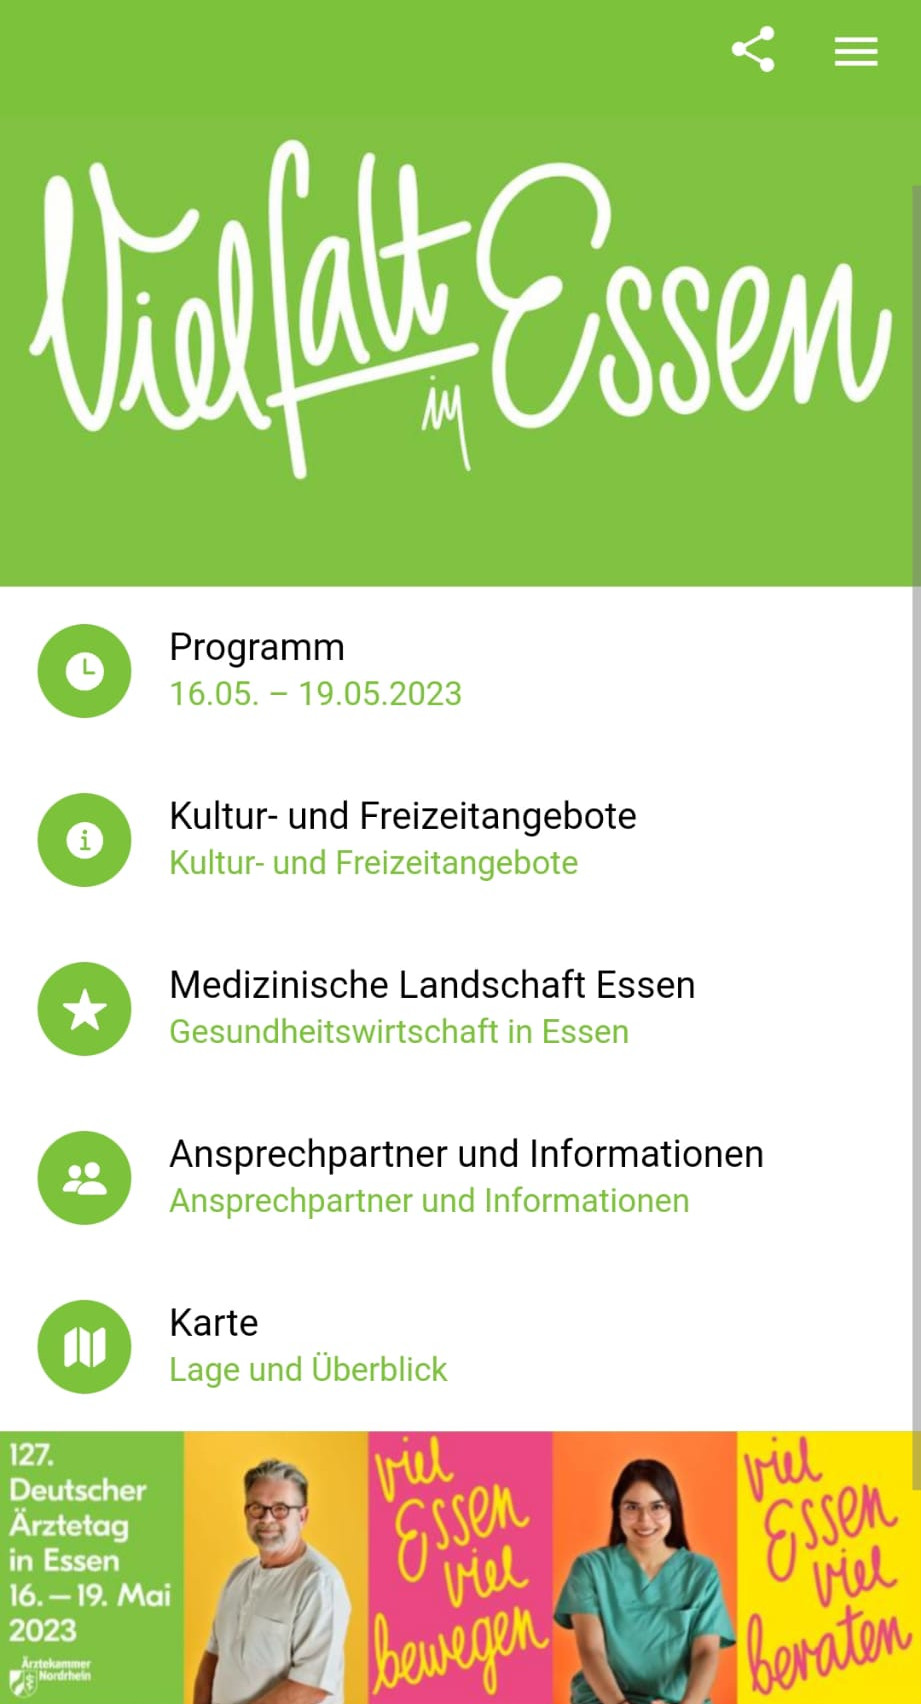 App_zum_Deutschen_AErztetag.jpeg